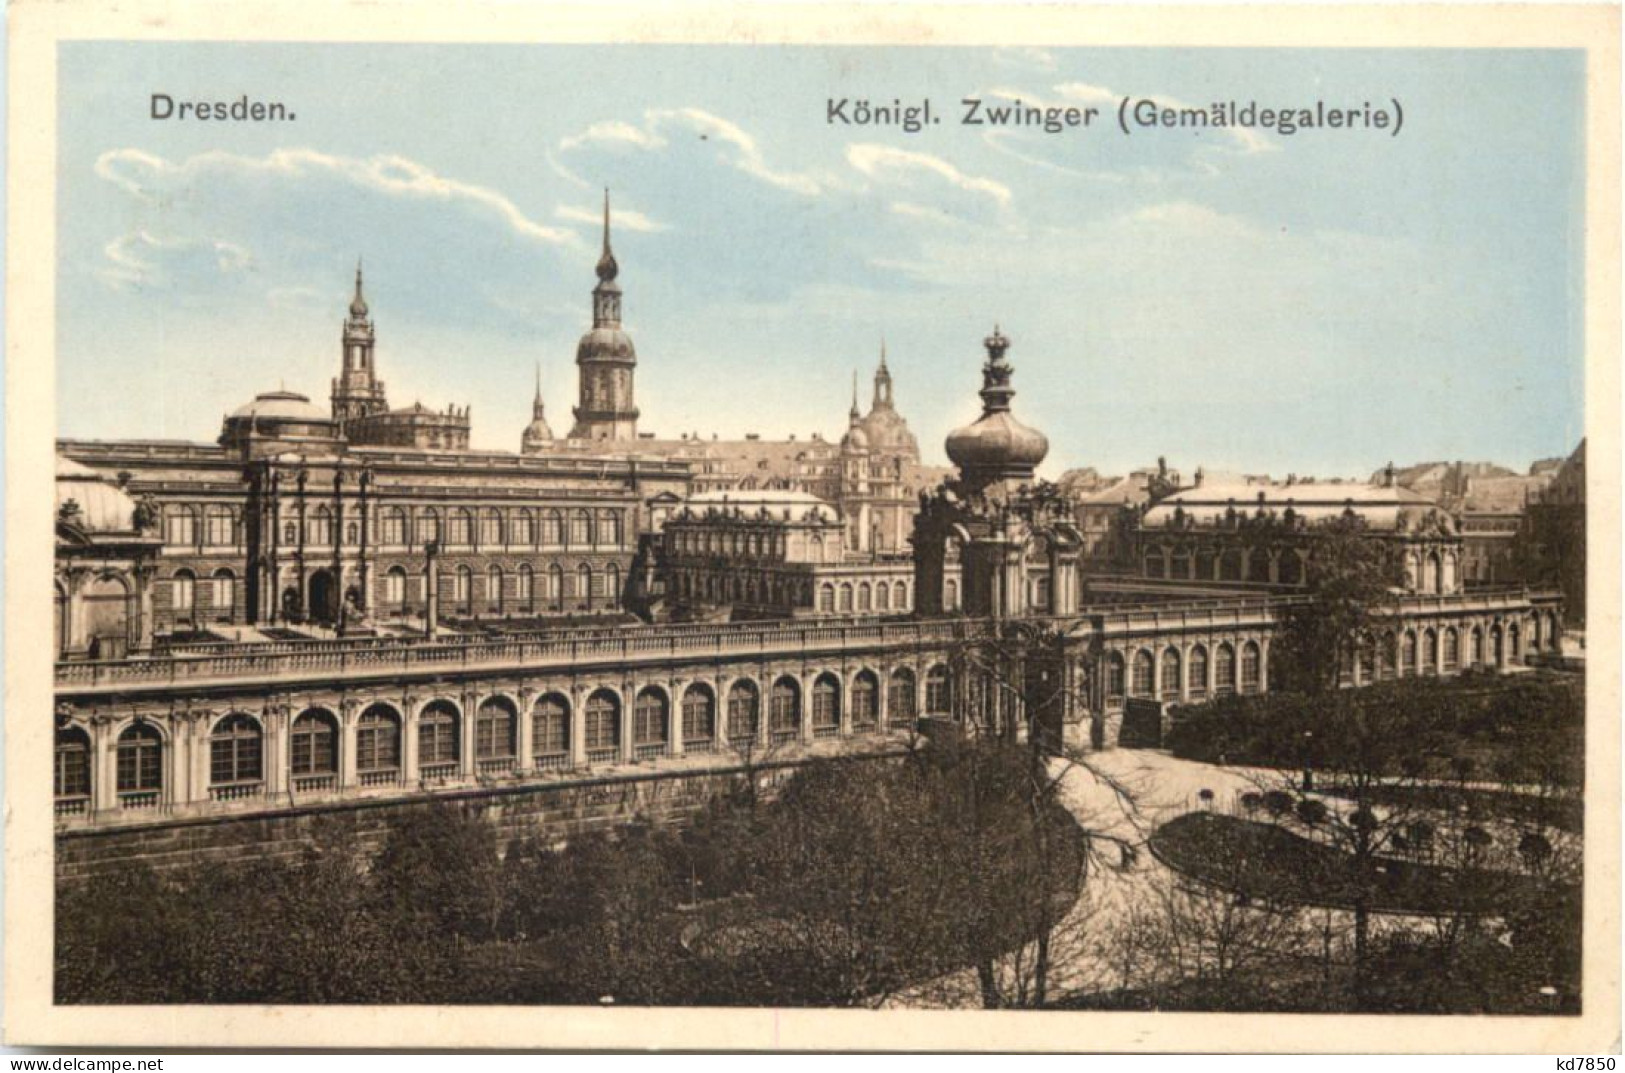 Dresden - Zwingger - Dresden